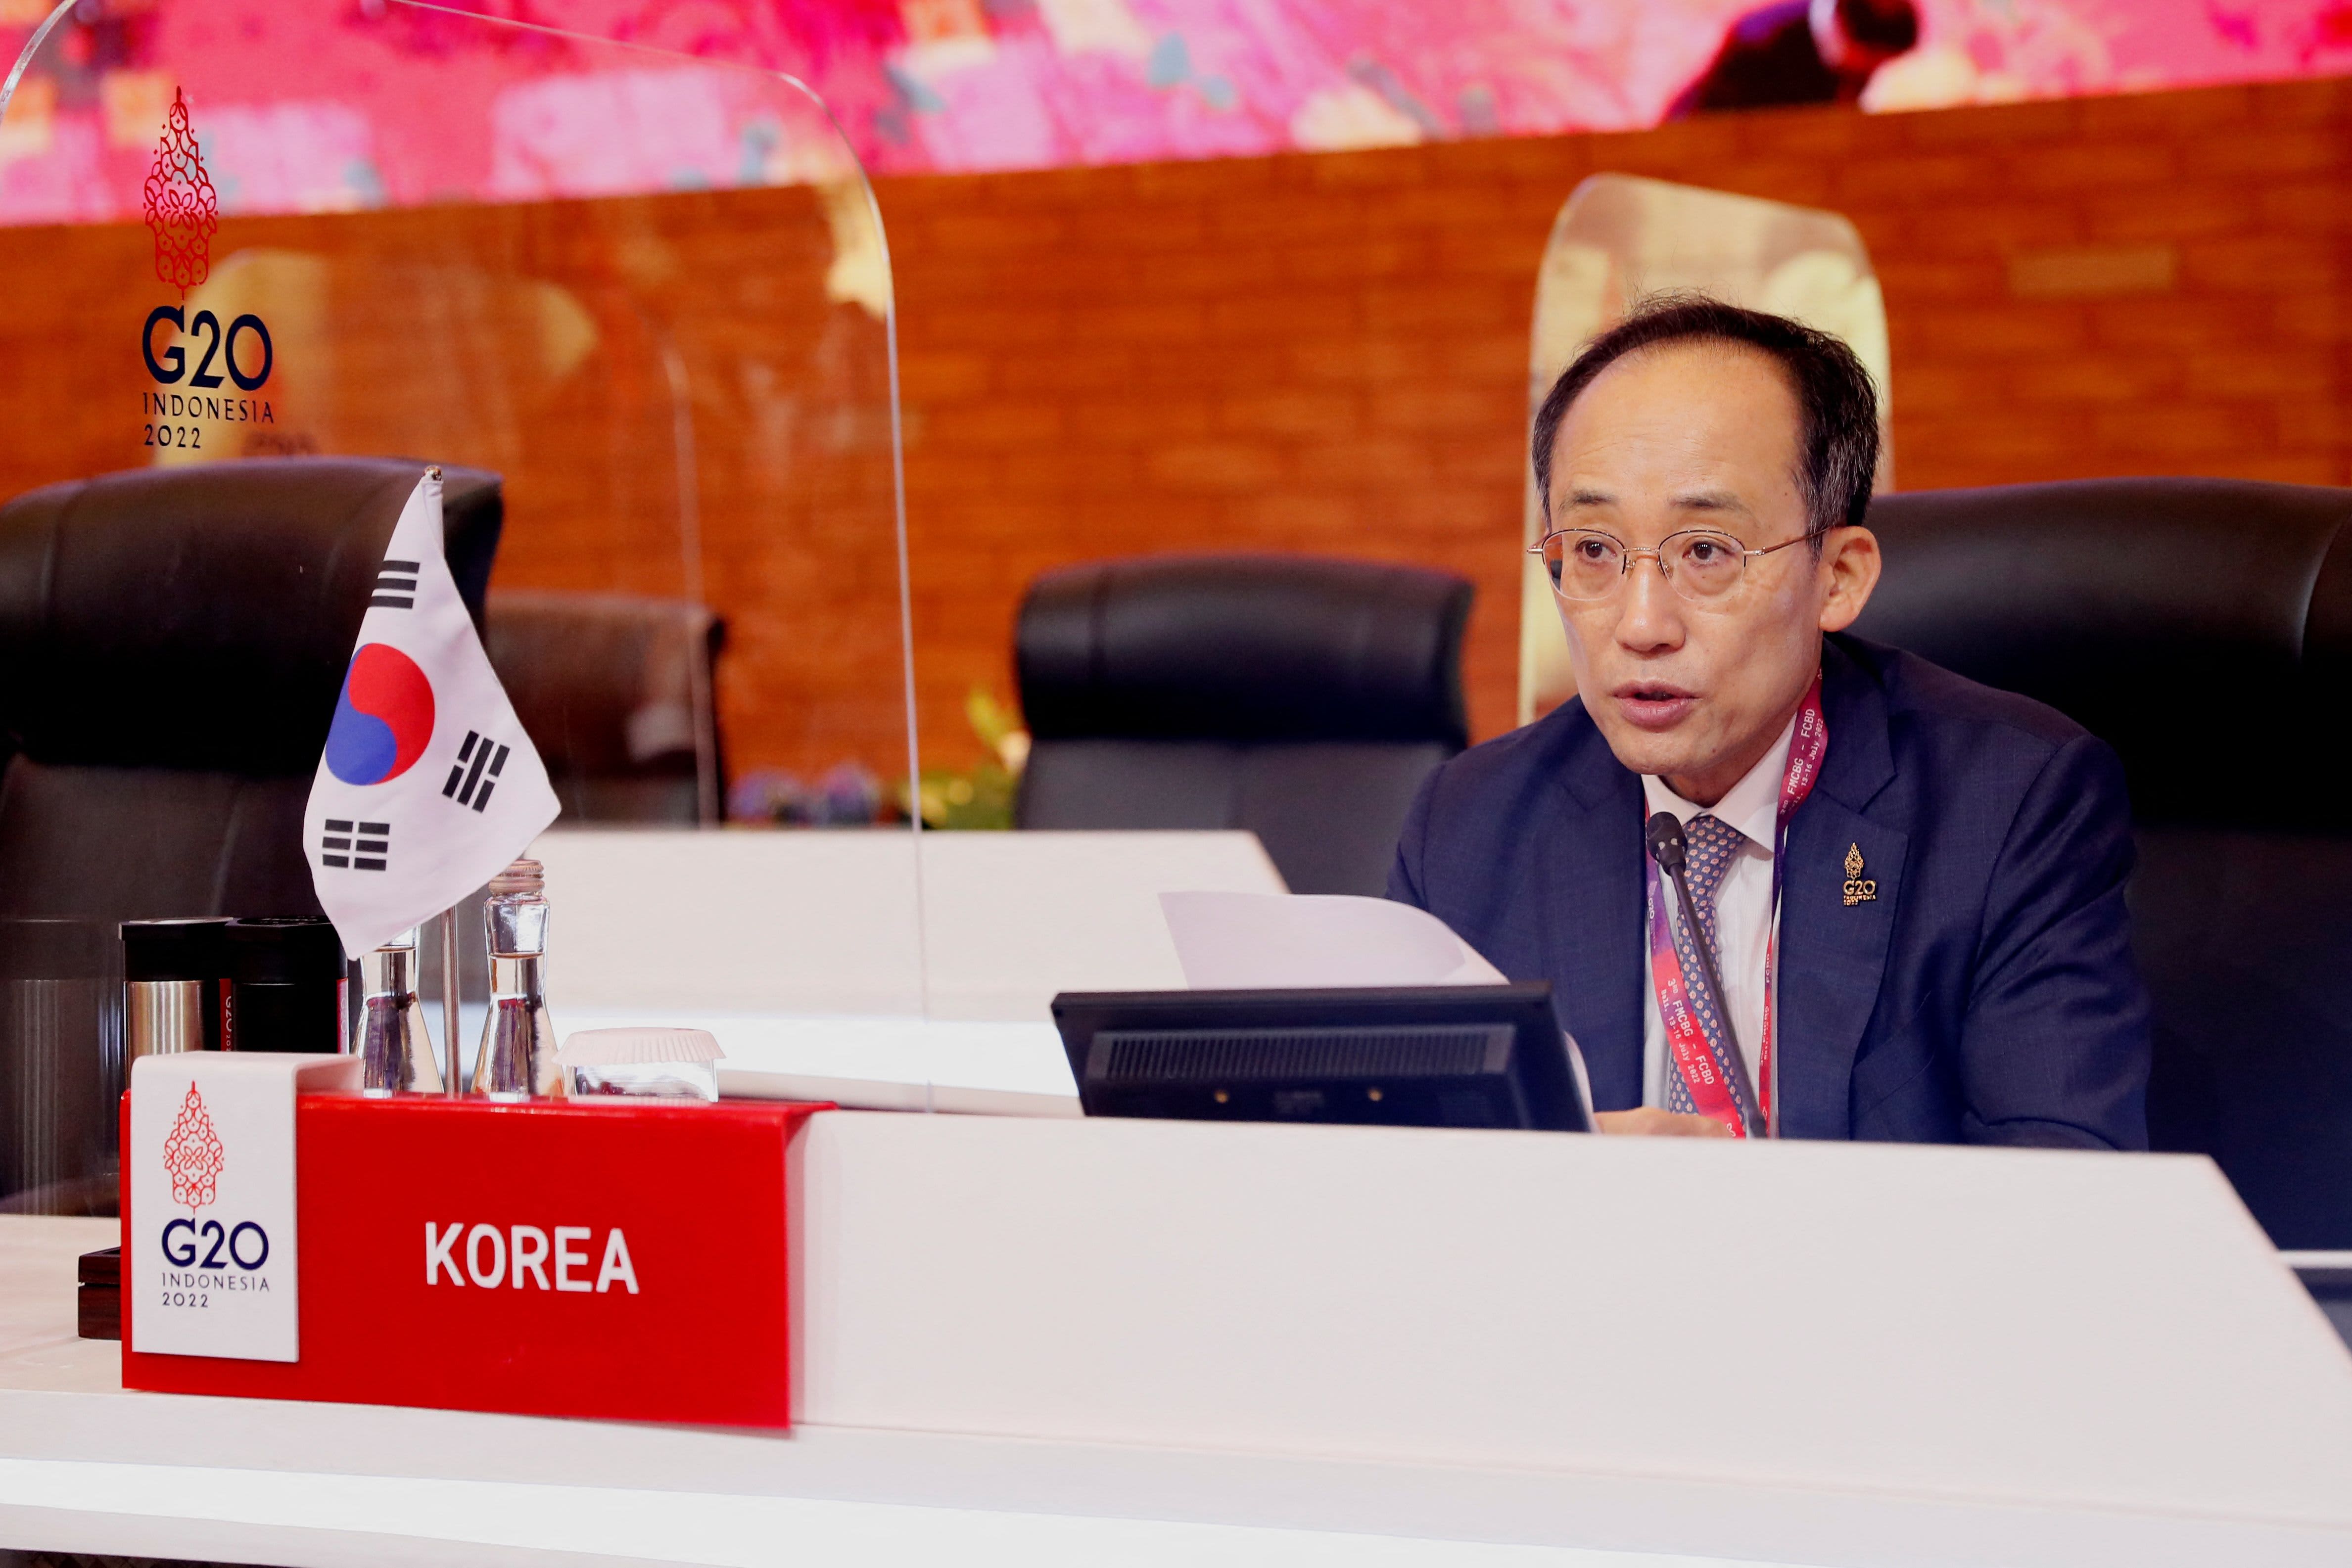 De Zuid-Koreaanse minister van Financiën zei dat zijn land op een “keerpunt” staat in de betrekkingen met Japan